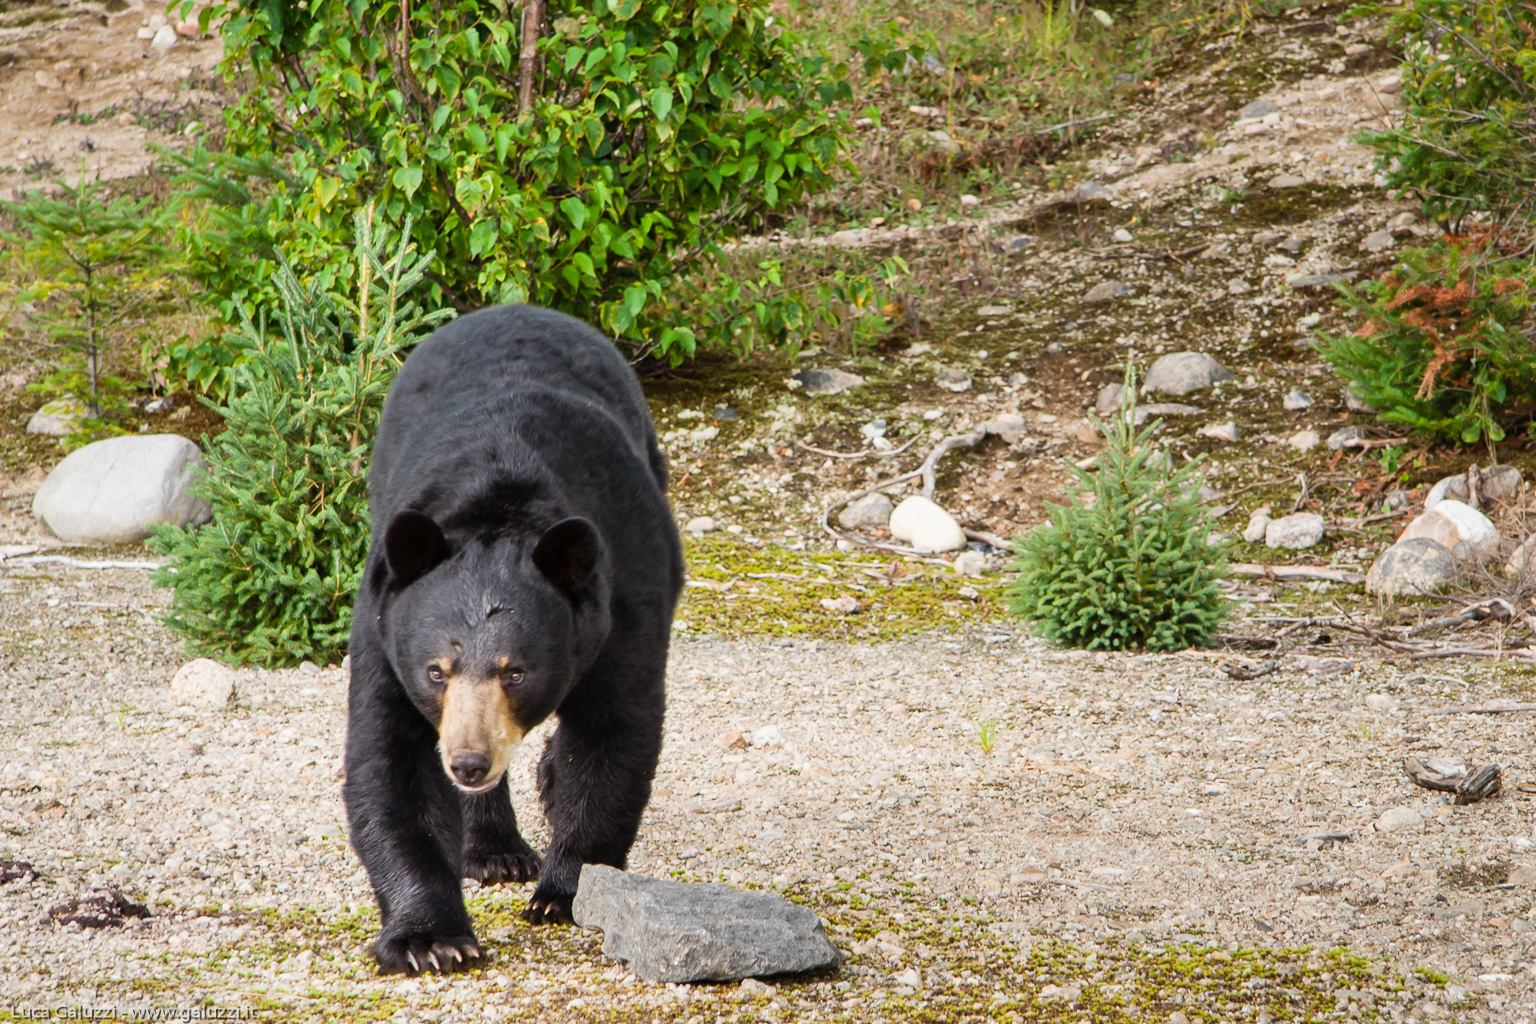 L'orso nero o baribal è l'orso più comune in America del Nord